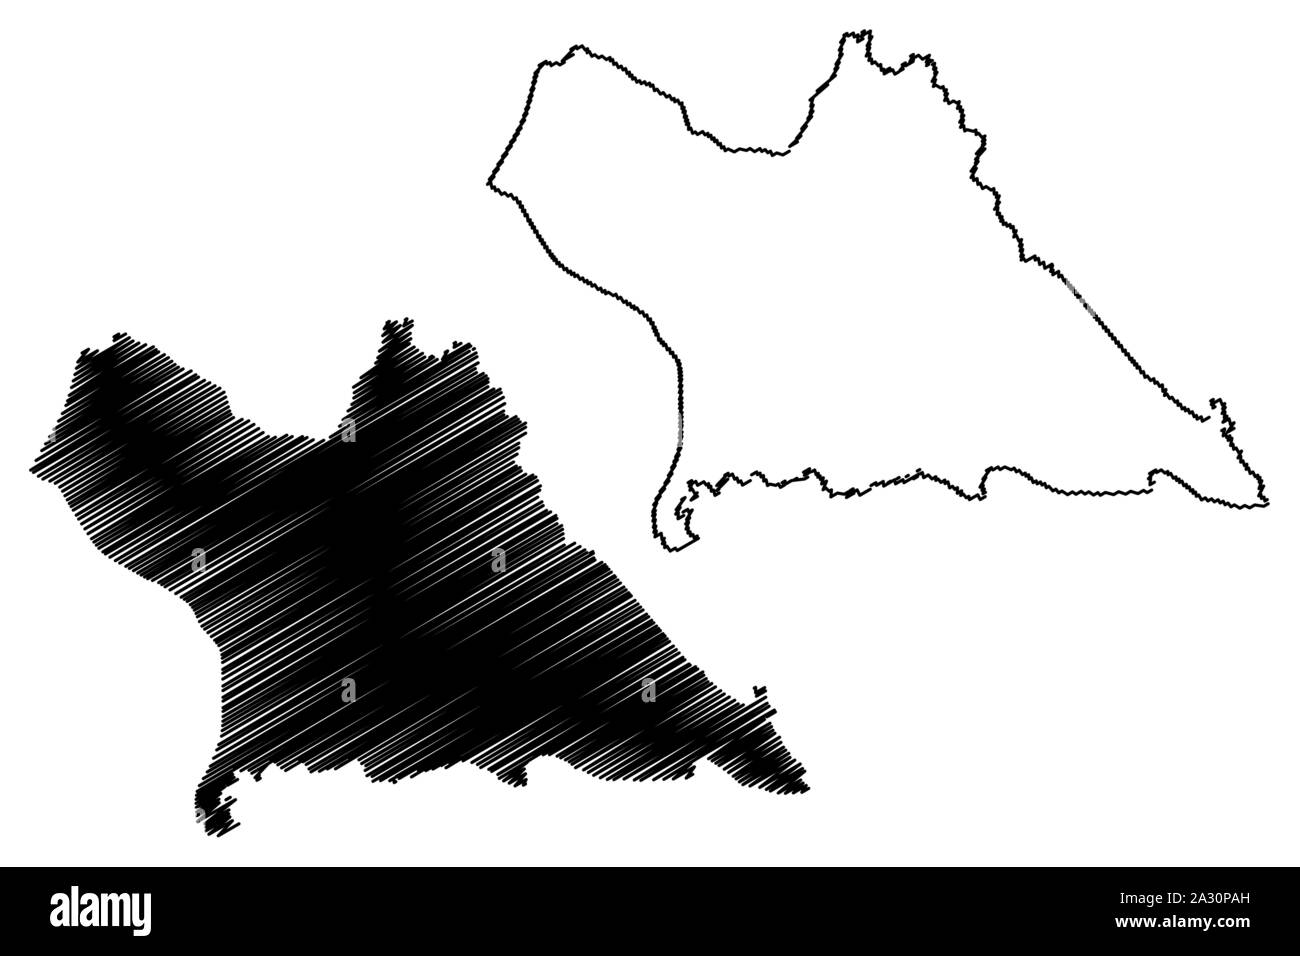 La province de Khammouane (République démocratique populaire du Laos, Muang Lao, Provinces du Laos) map vector illustration croquis Khammouan, scribble map Illustration de Vecteur